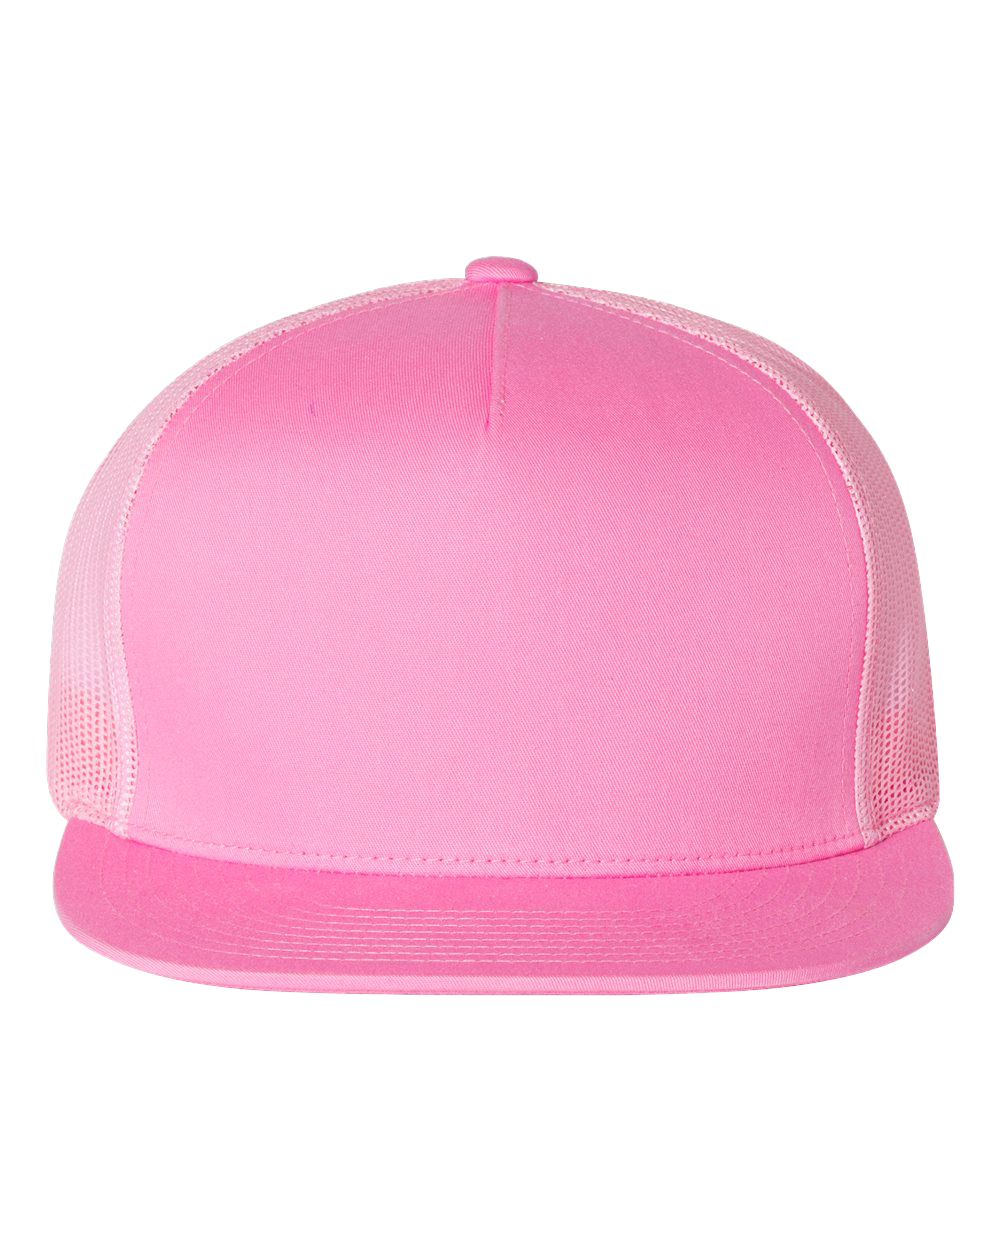 "The Lisa F" Stoopid Hat